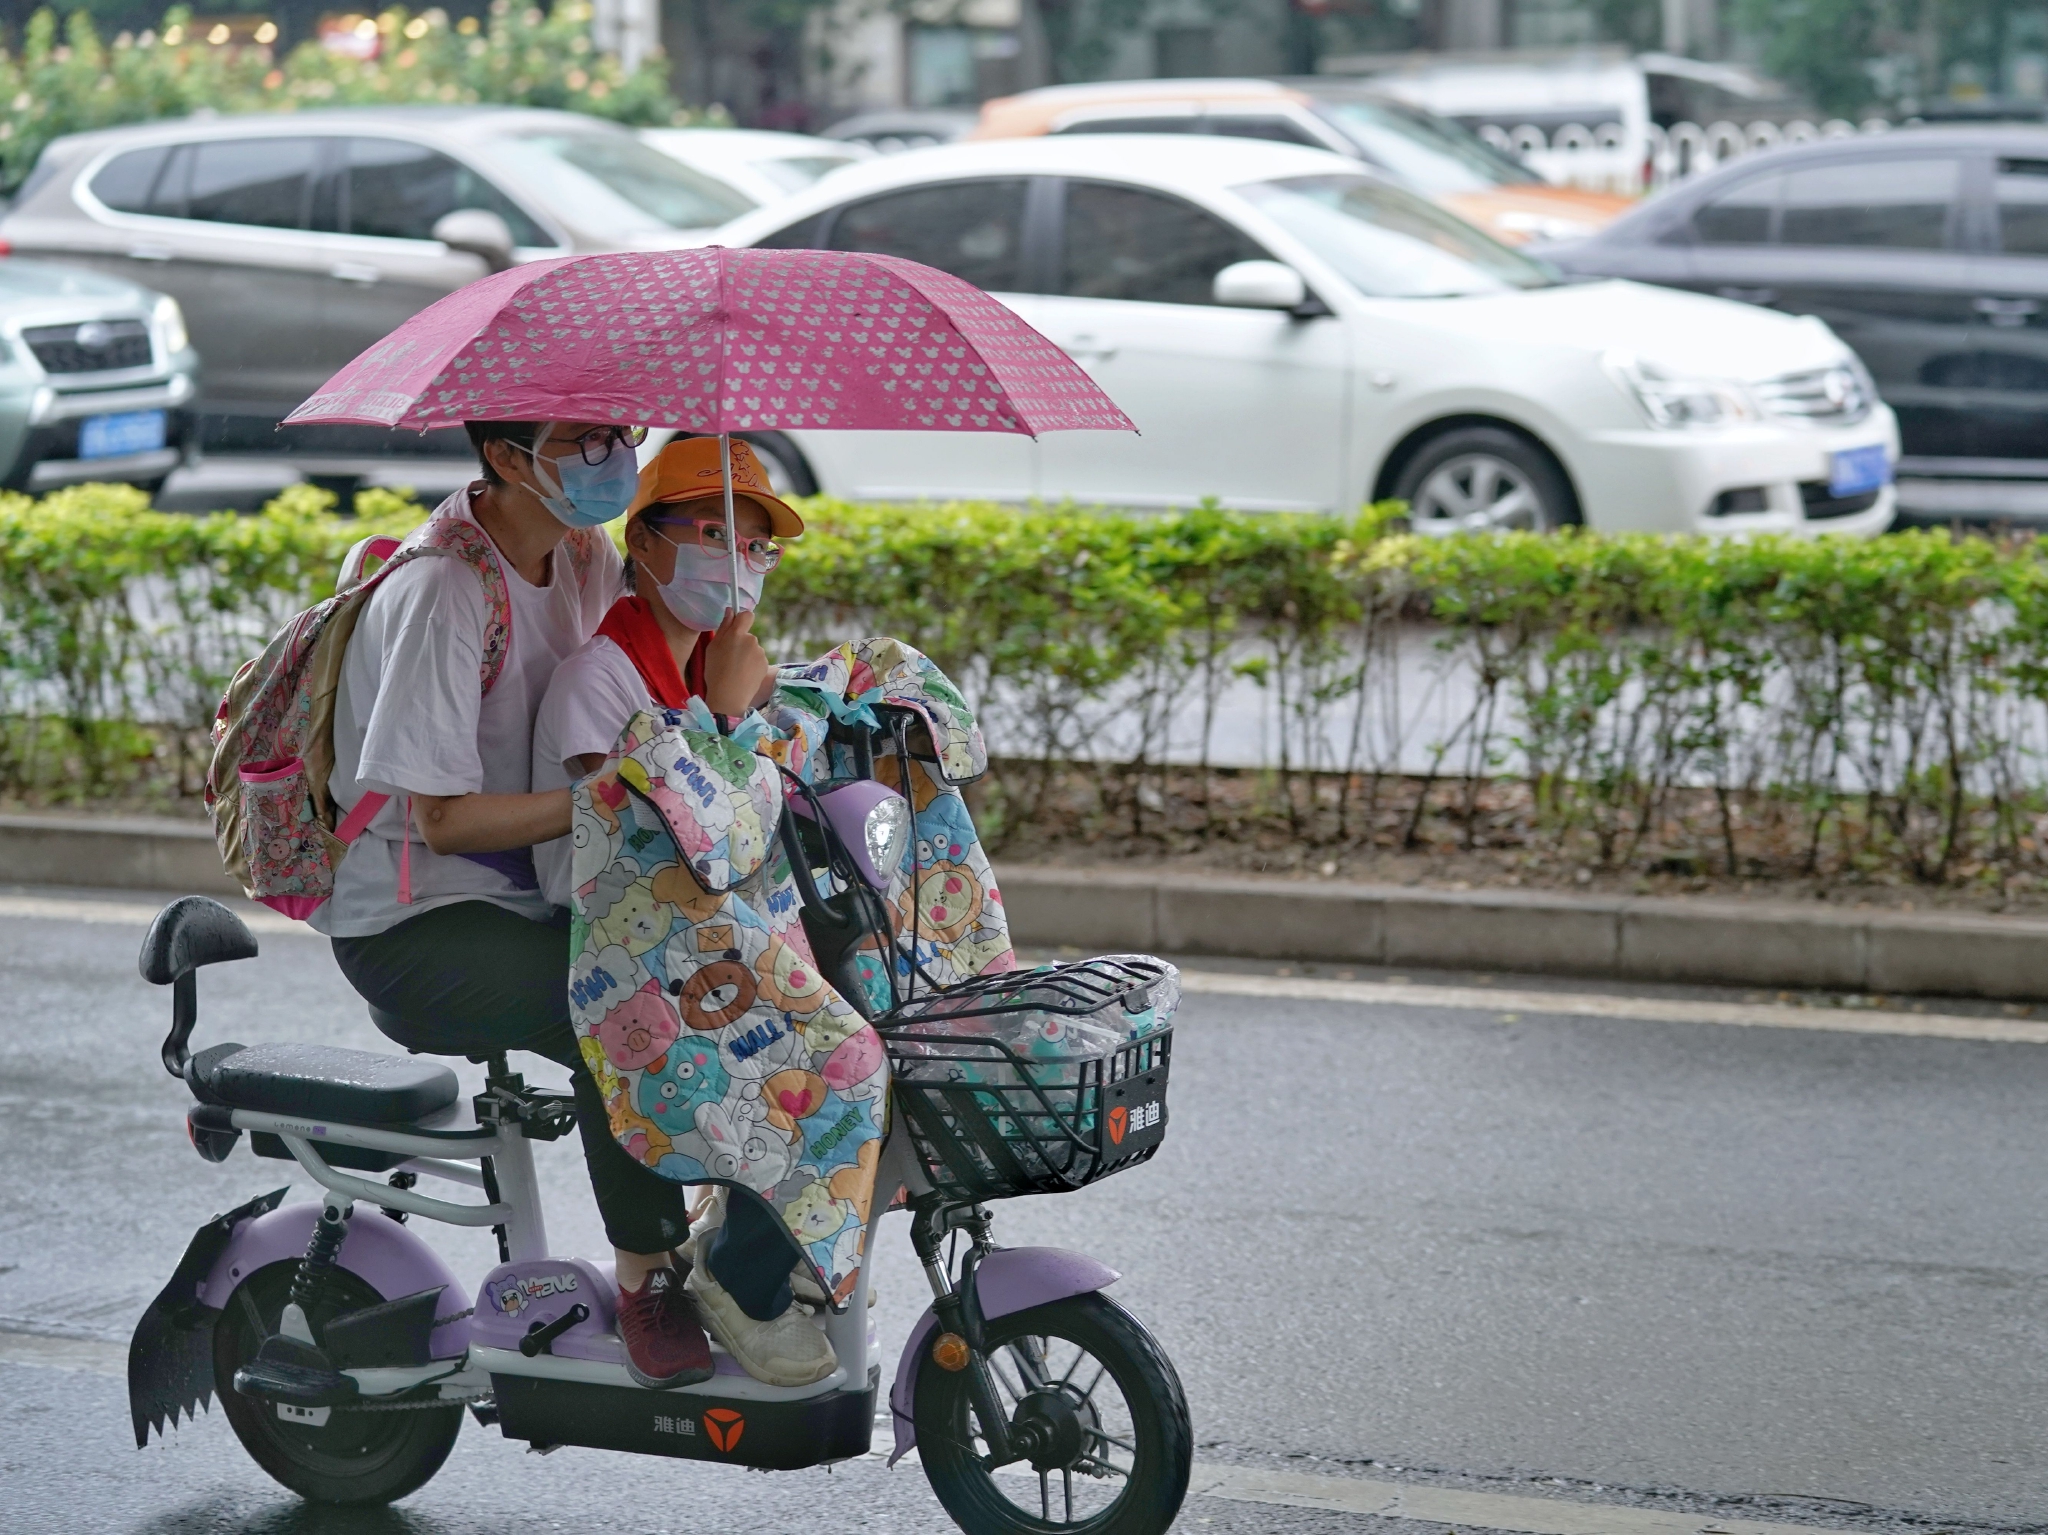 6月27日,广渠路上,一位家长骑电动车送孩子上学,小朋友给家长举着雨伞